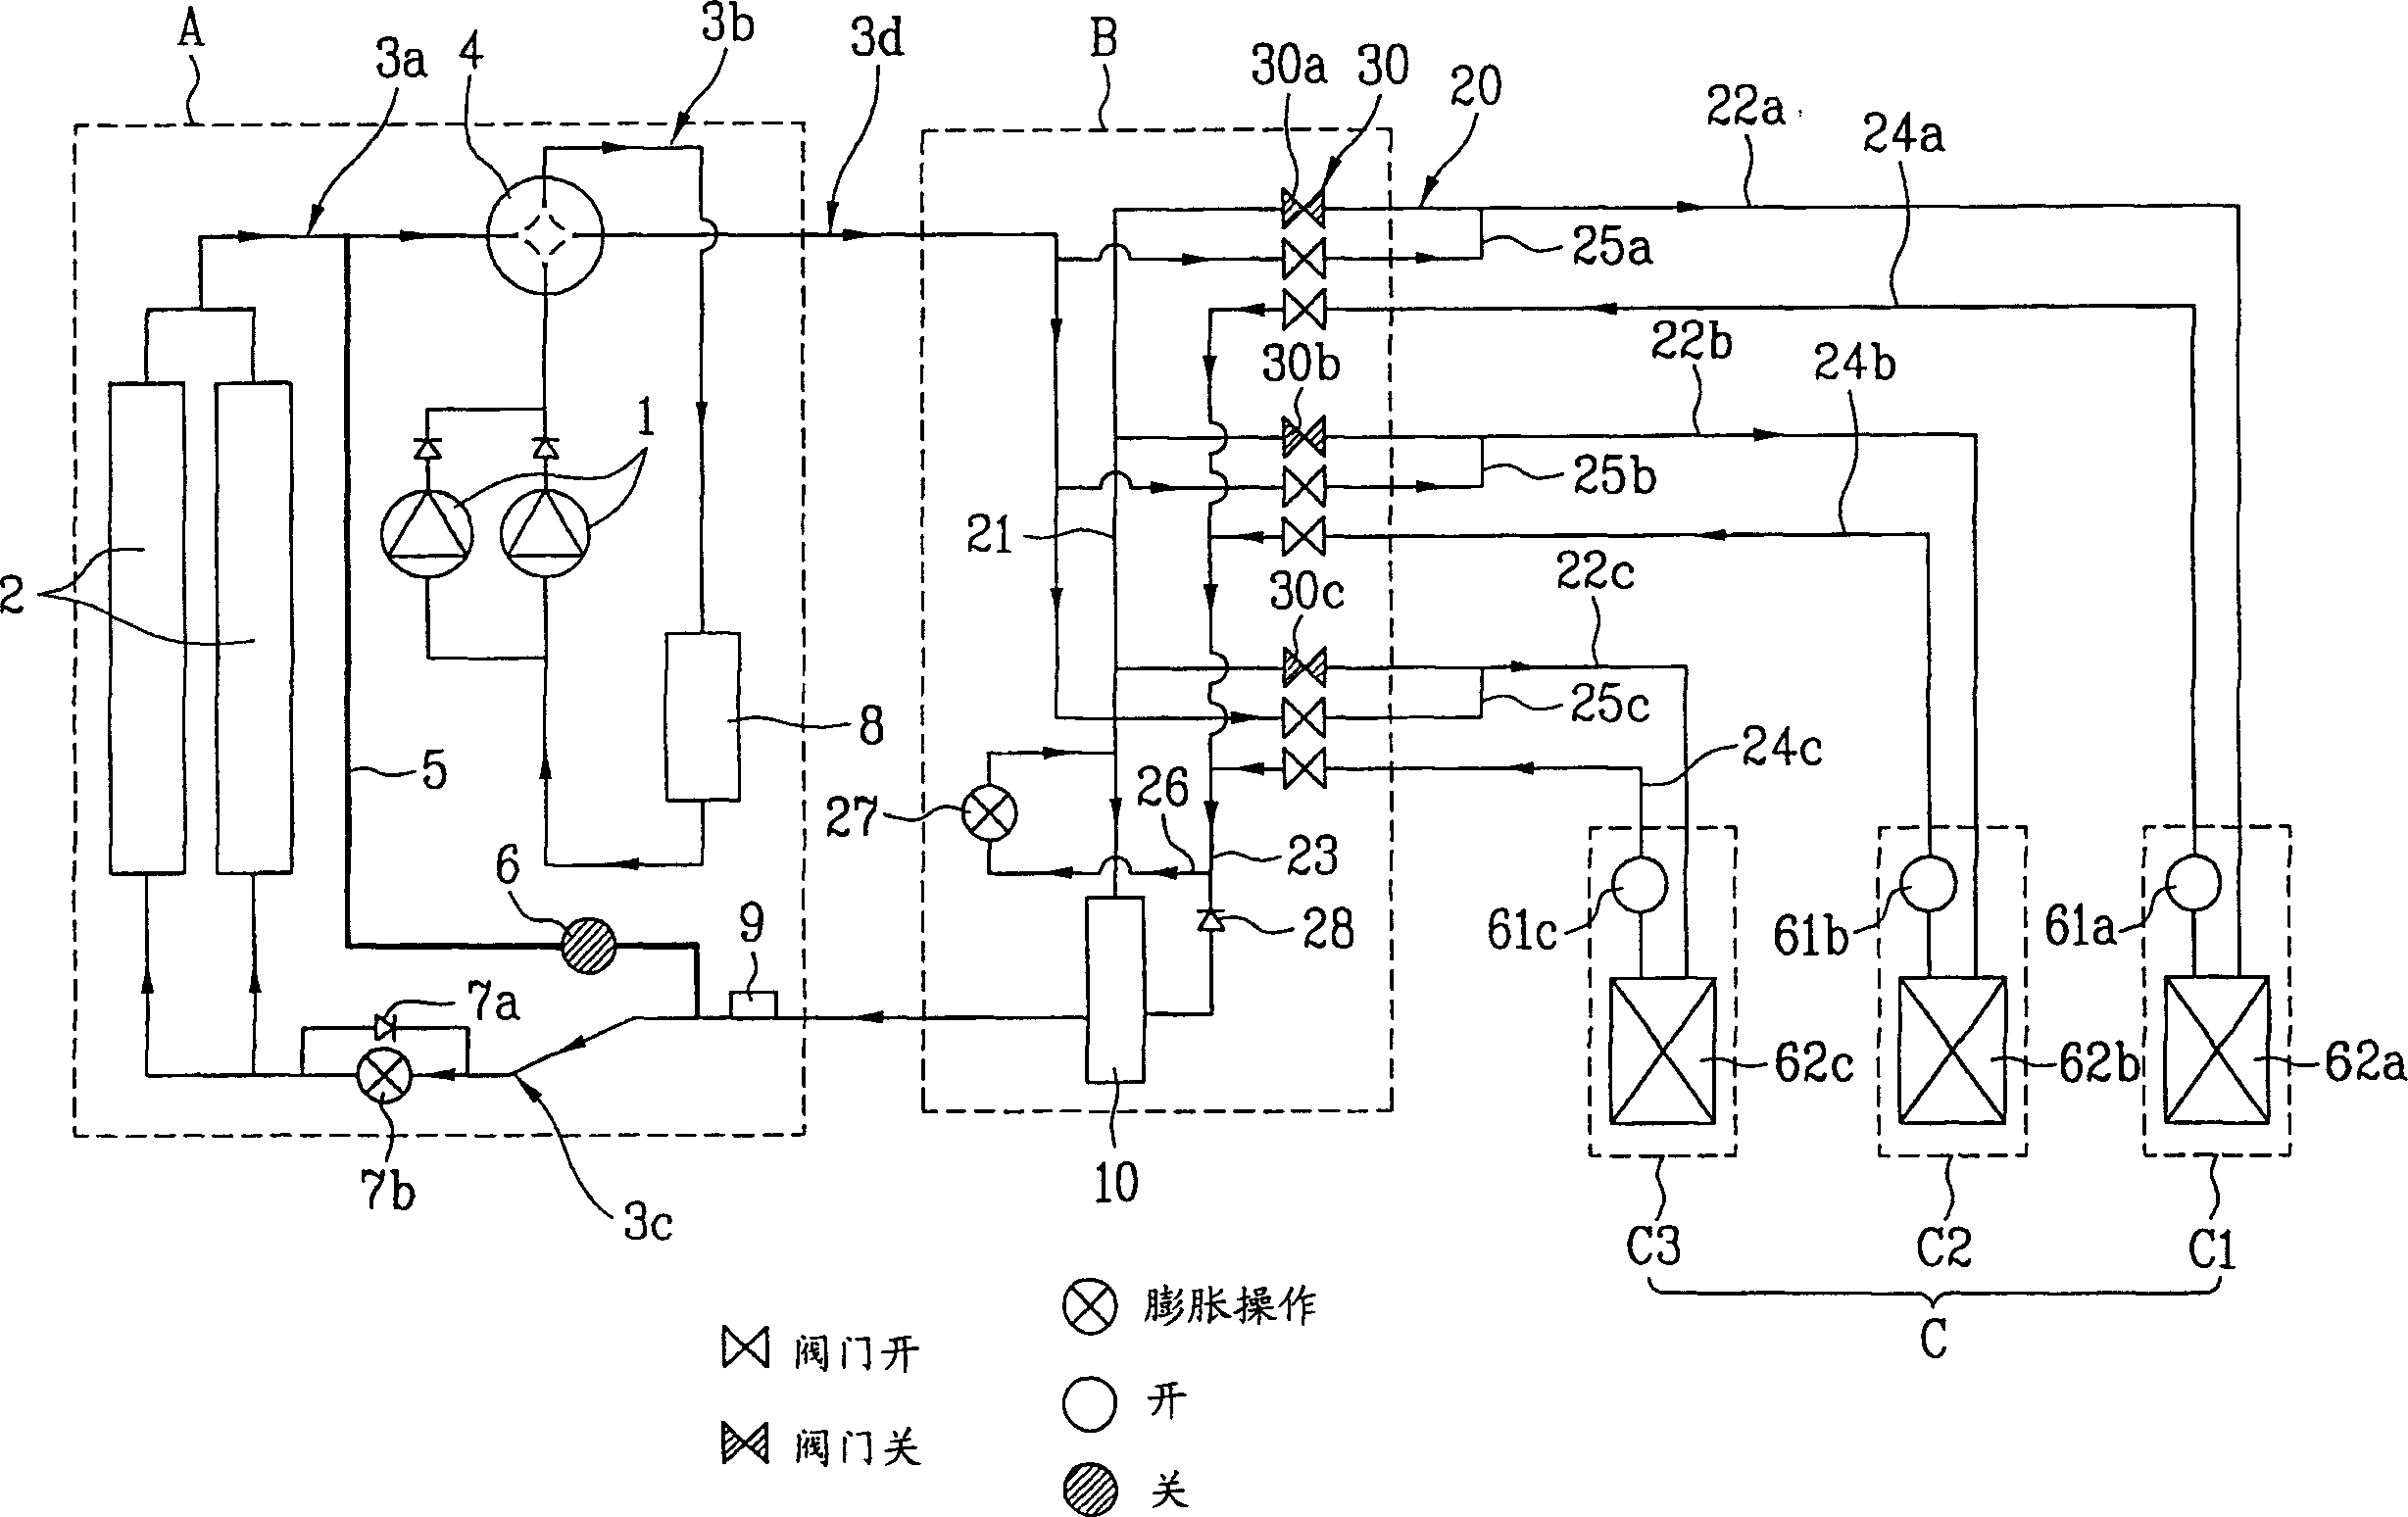 Multe-unit air conditioner and control method